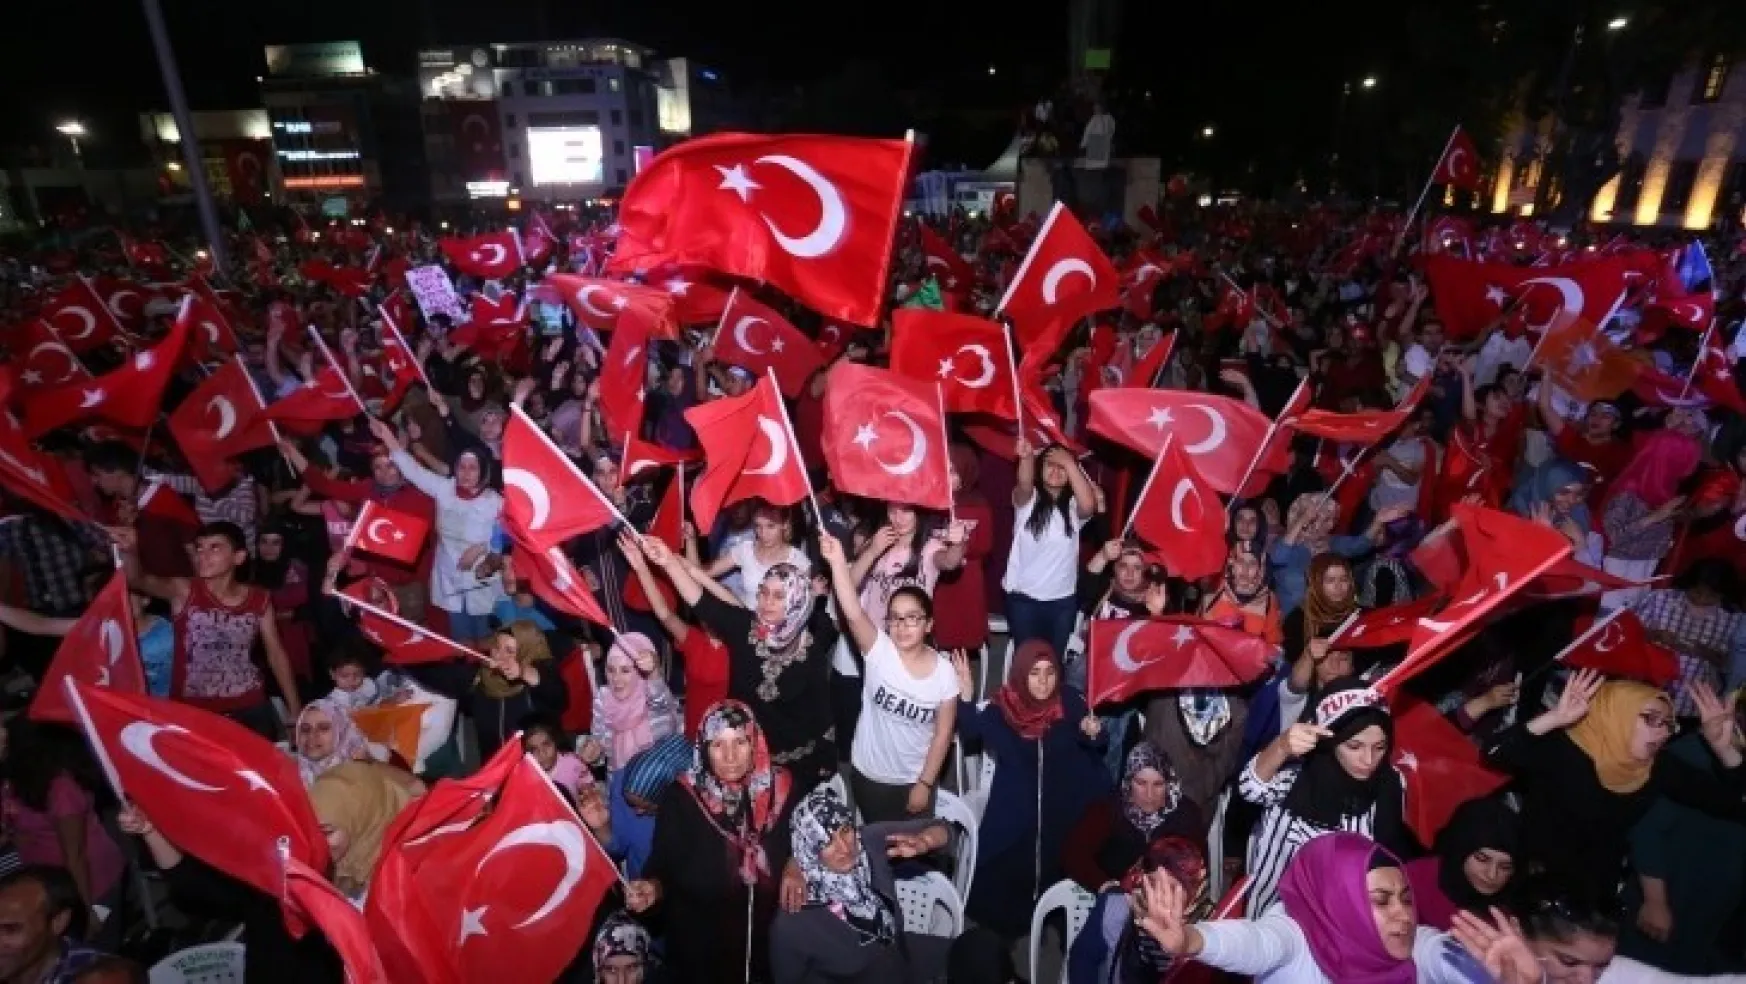 Başkan Çınar'dan 15 Temmuz Demokrasi Ve Milli Birlik Günü Mesajı